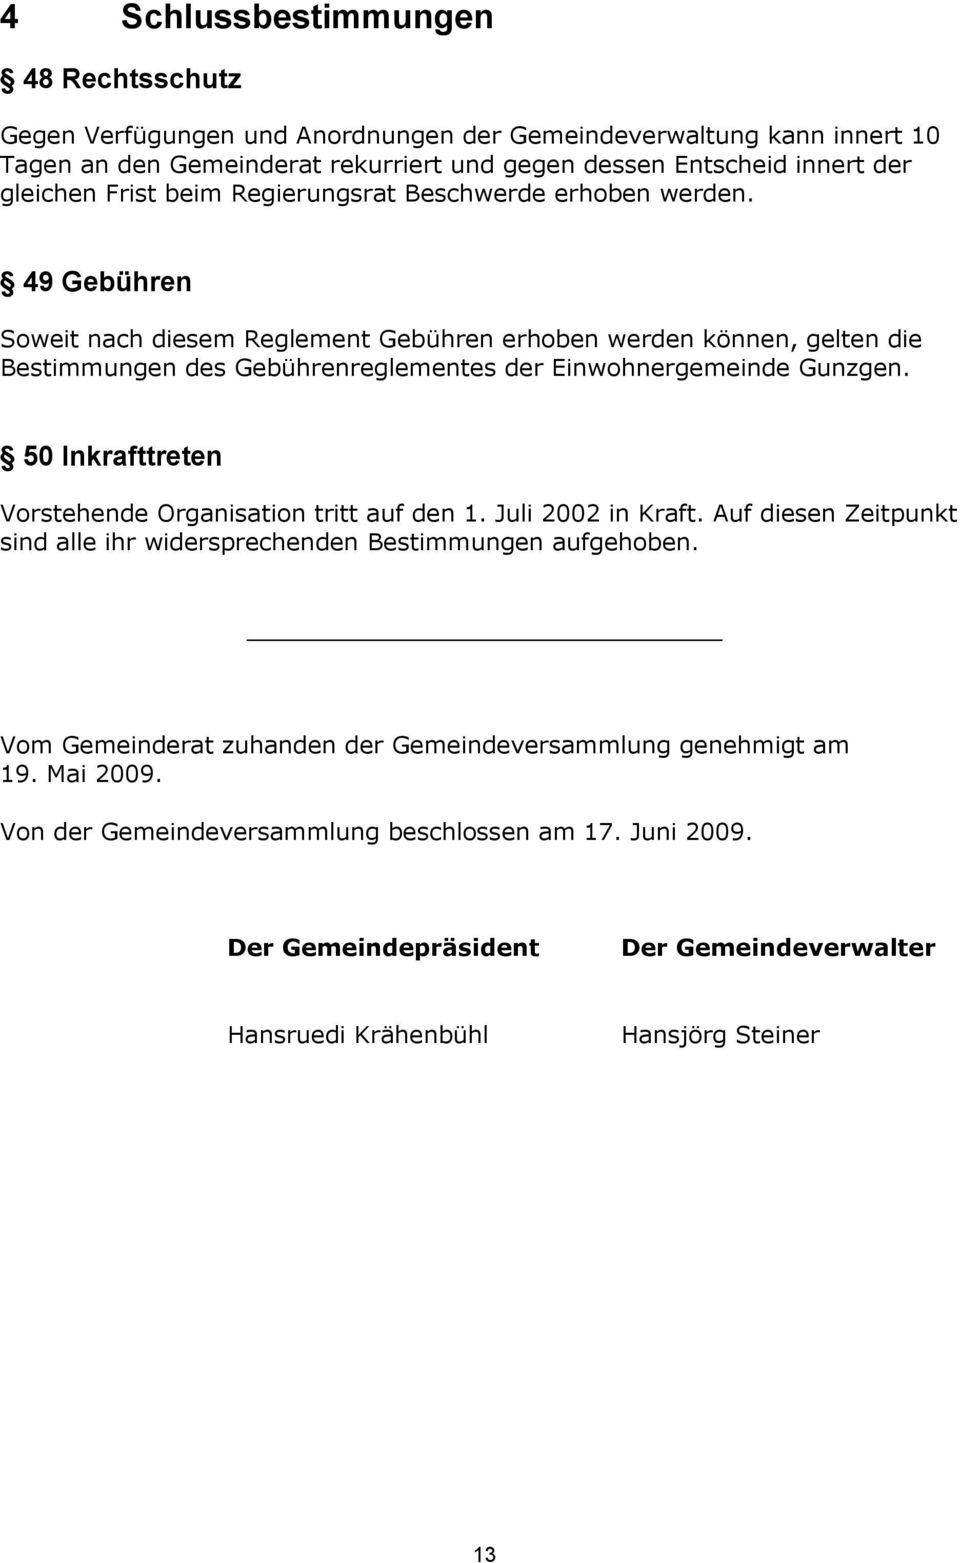 49 Gebühren Soweit nach diesem Reglement Gebühren erhoben werden können, gelten die Bestimmungen des Gebührenreglementes der Einwohnergemeinde Gunzgen.